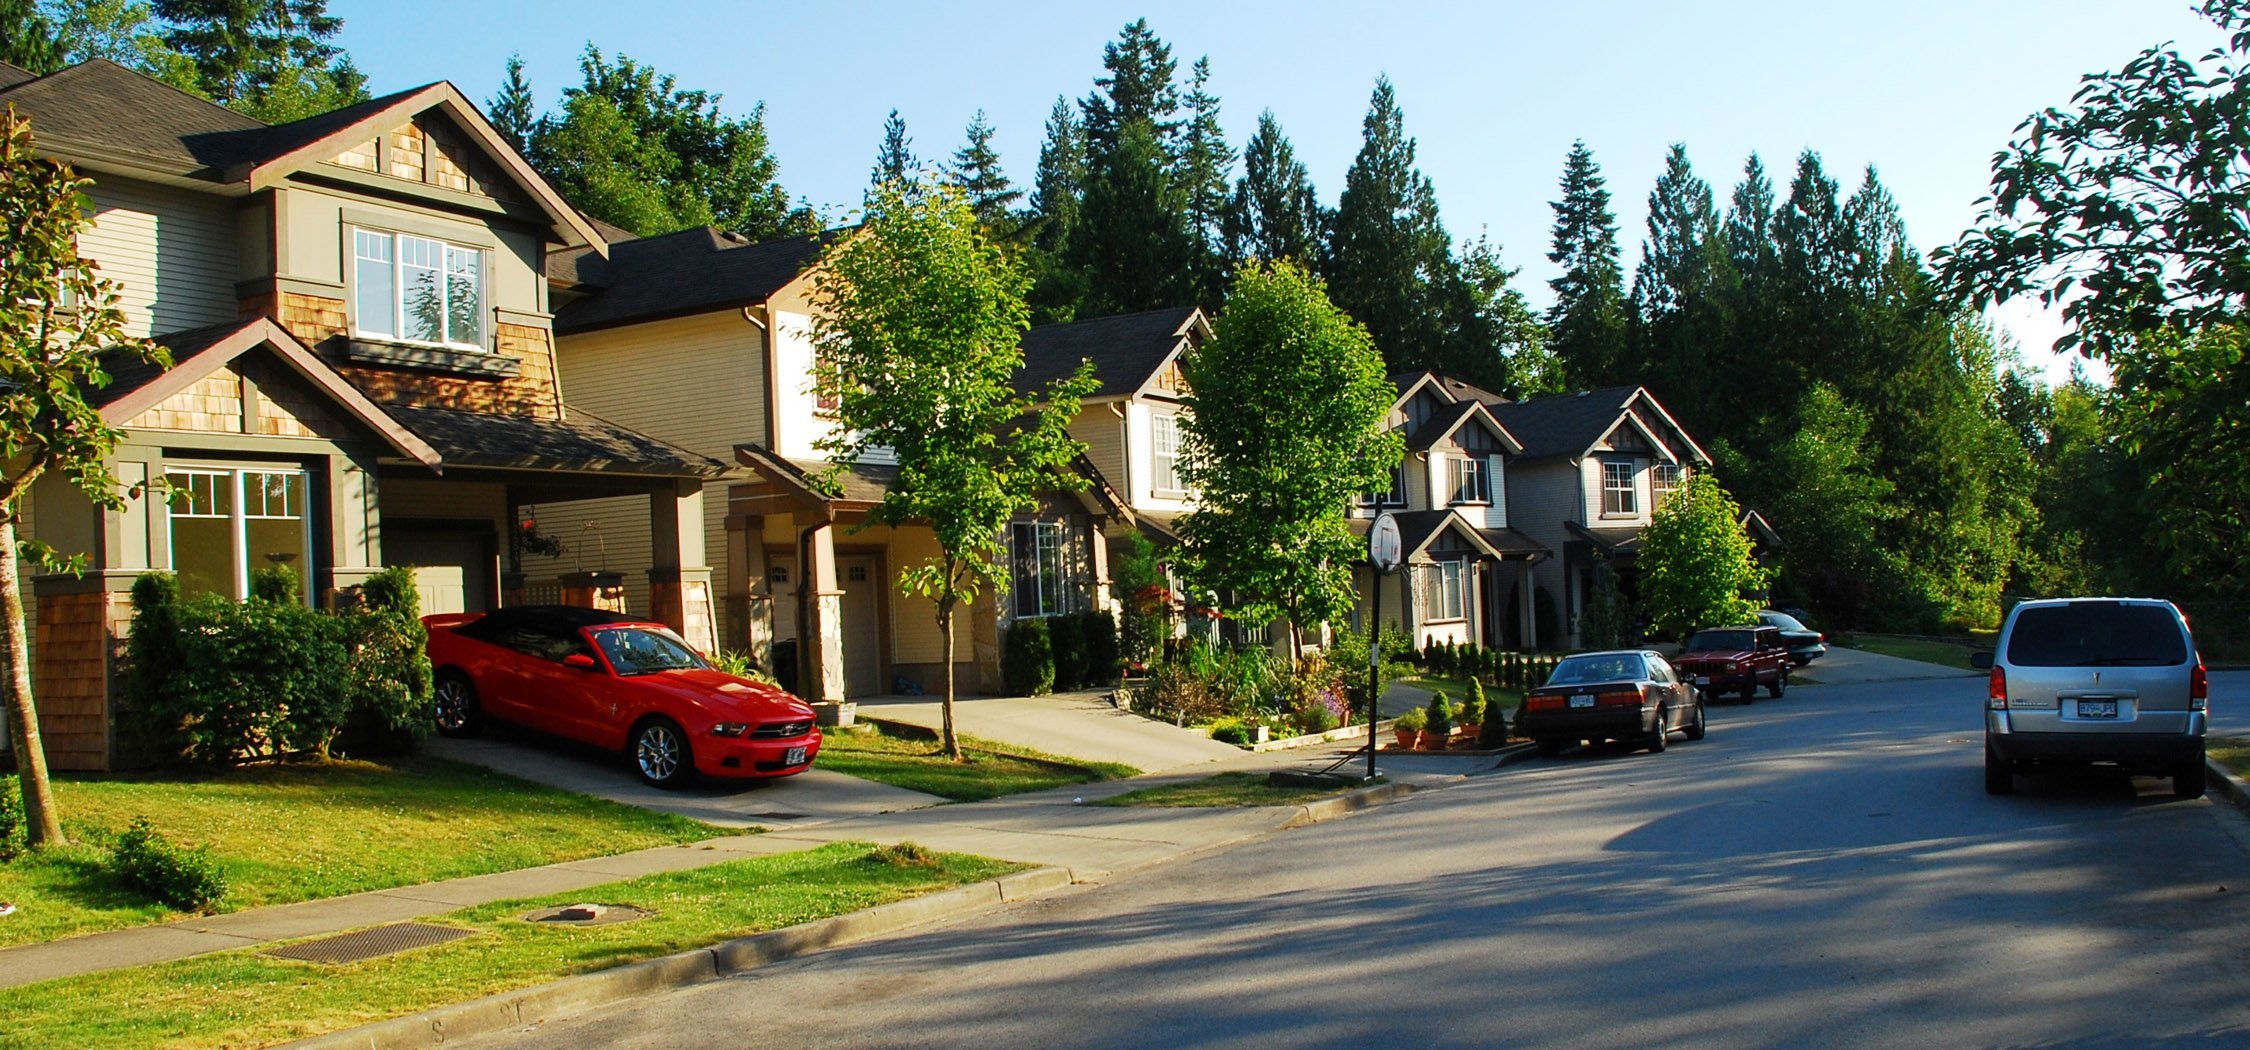 11 способов cэкономить при покупке жилья в канаде